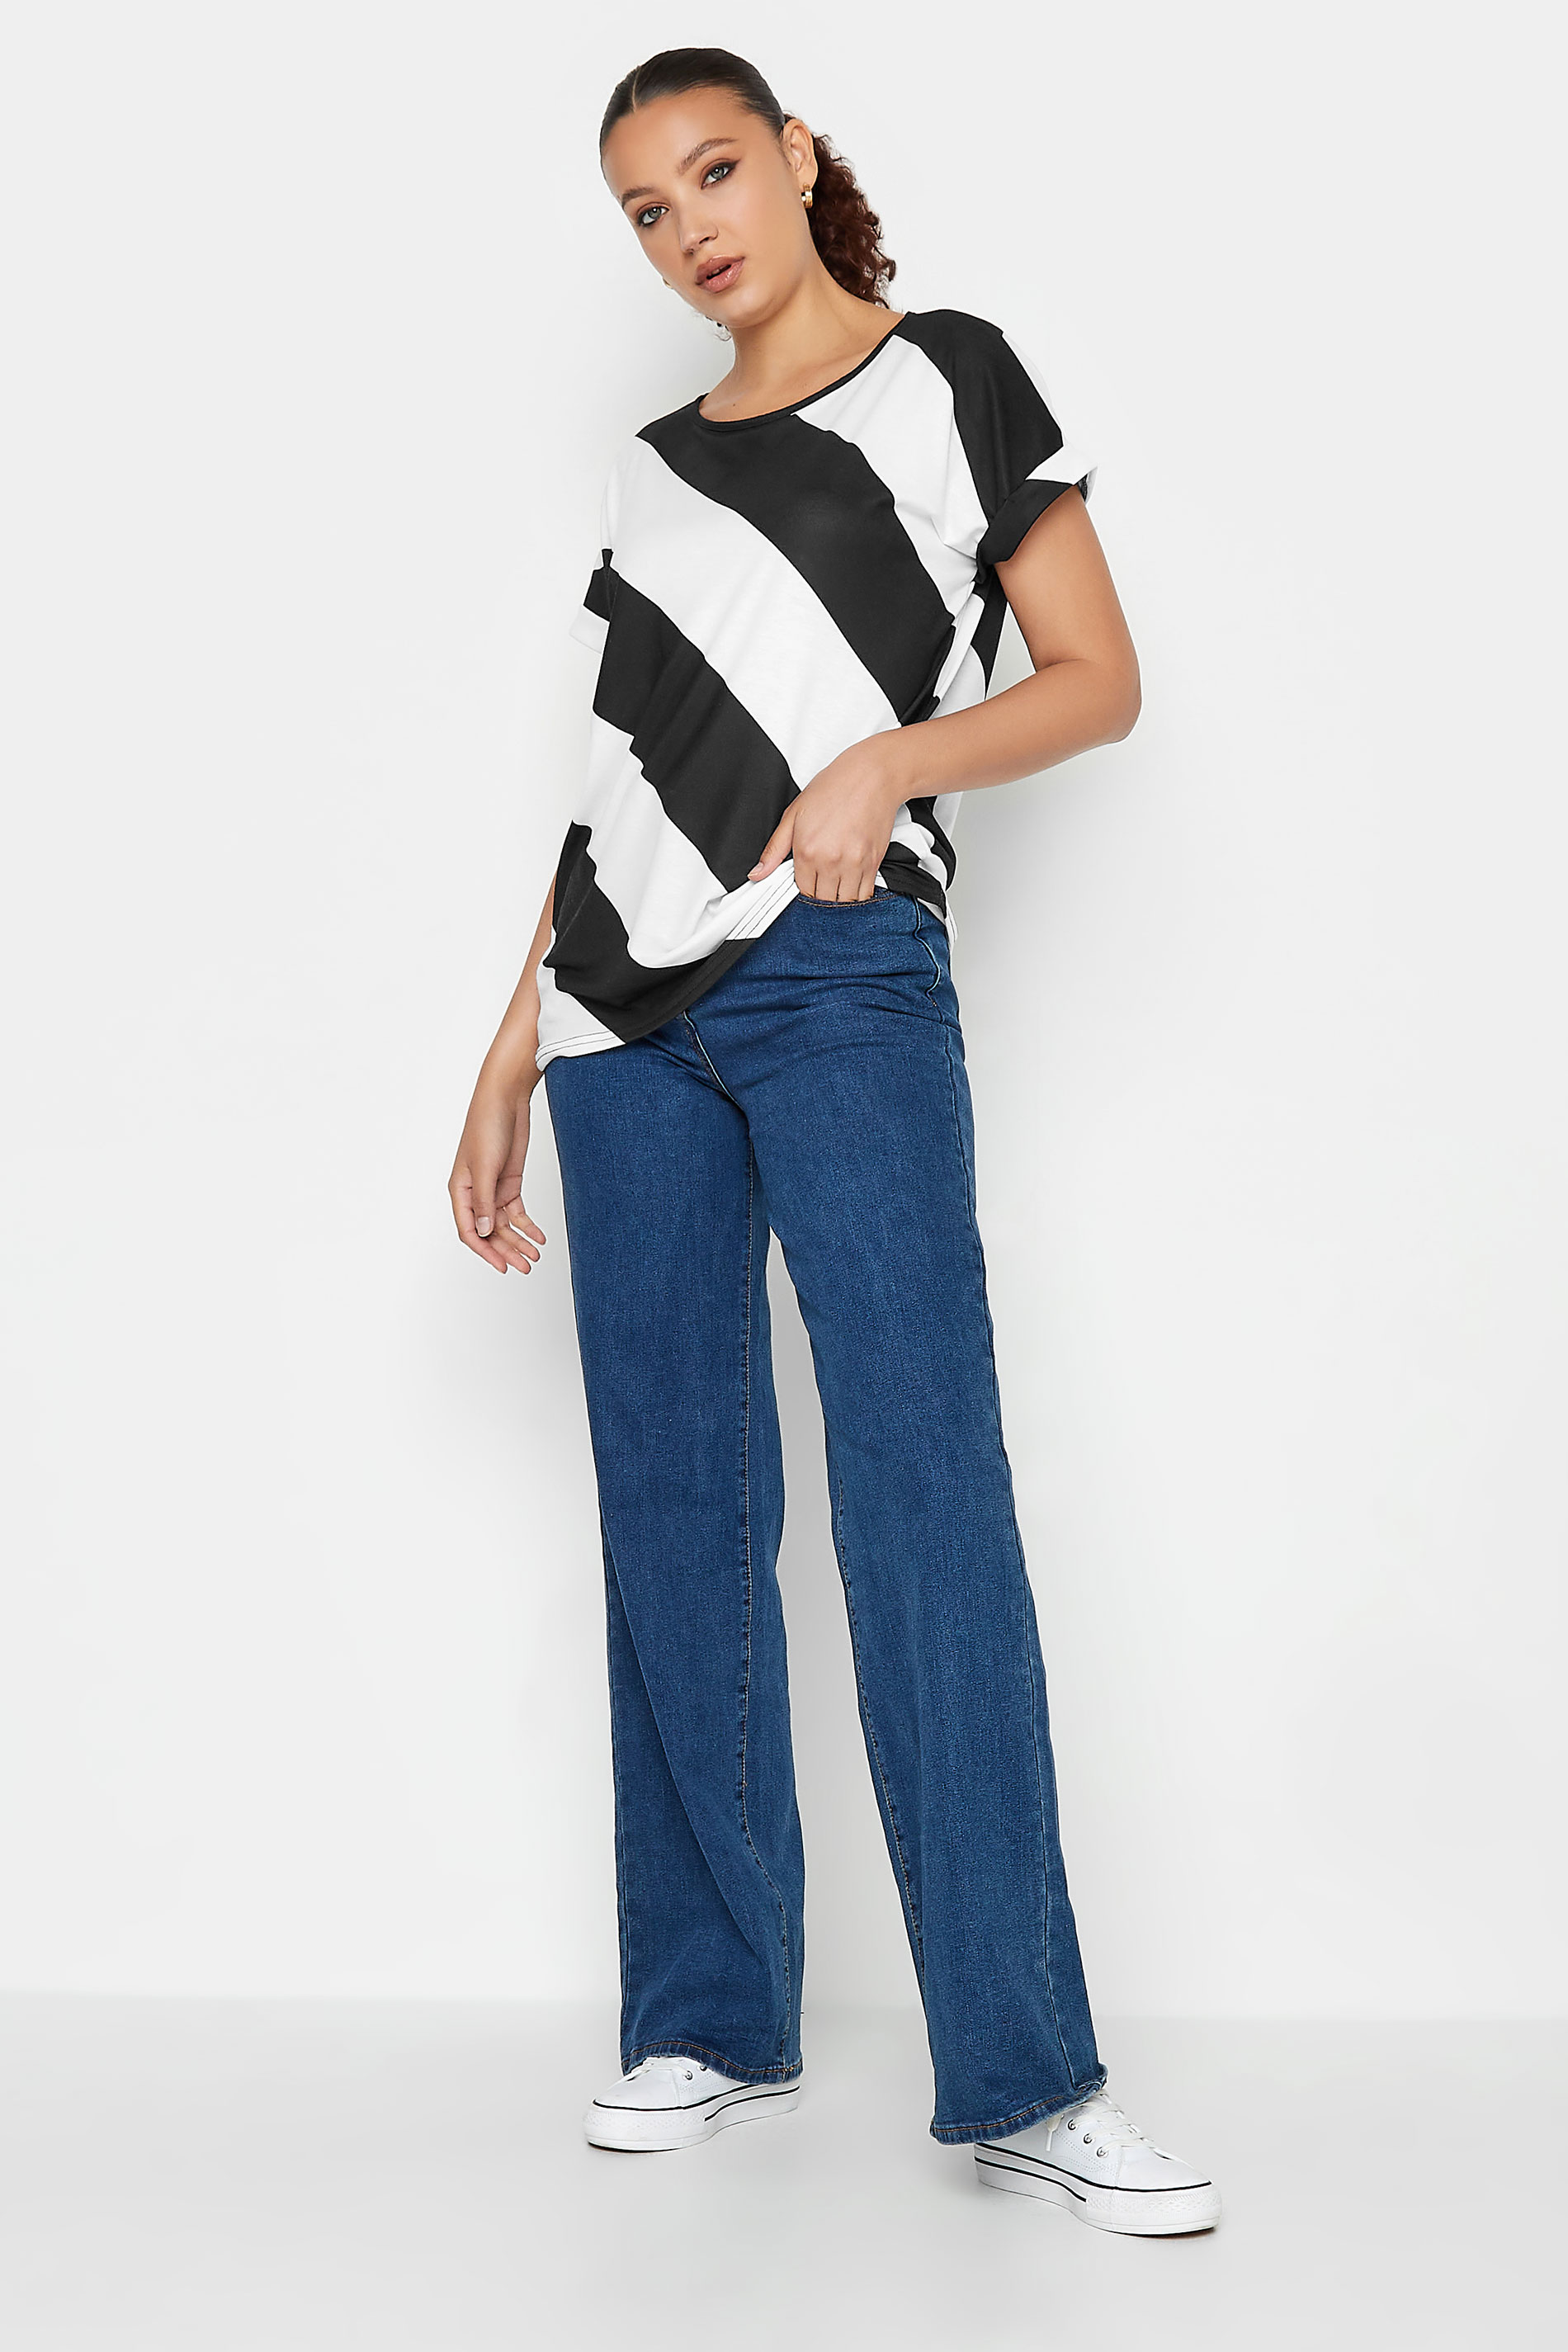 LTS Tall White & Black Stripe T-Shirt | Long Tall Sally  3